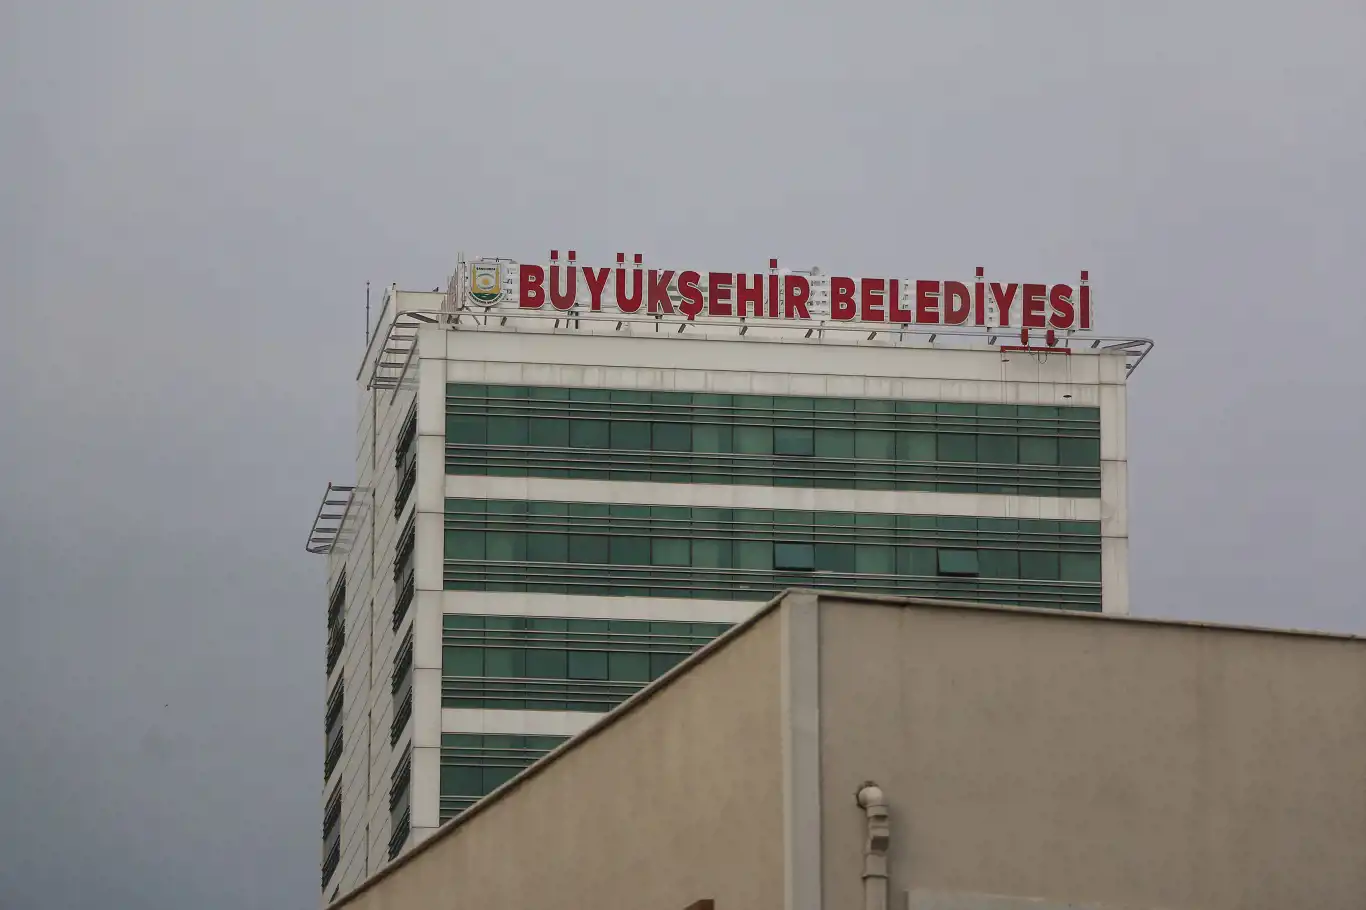 Şanlıurfa Büyükşehir Belediyesine ait işletmeler de boykota başladı